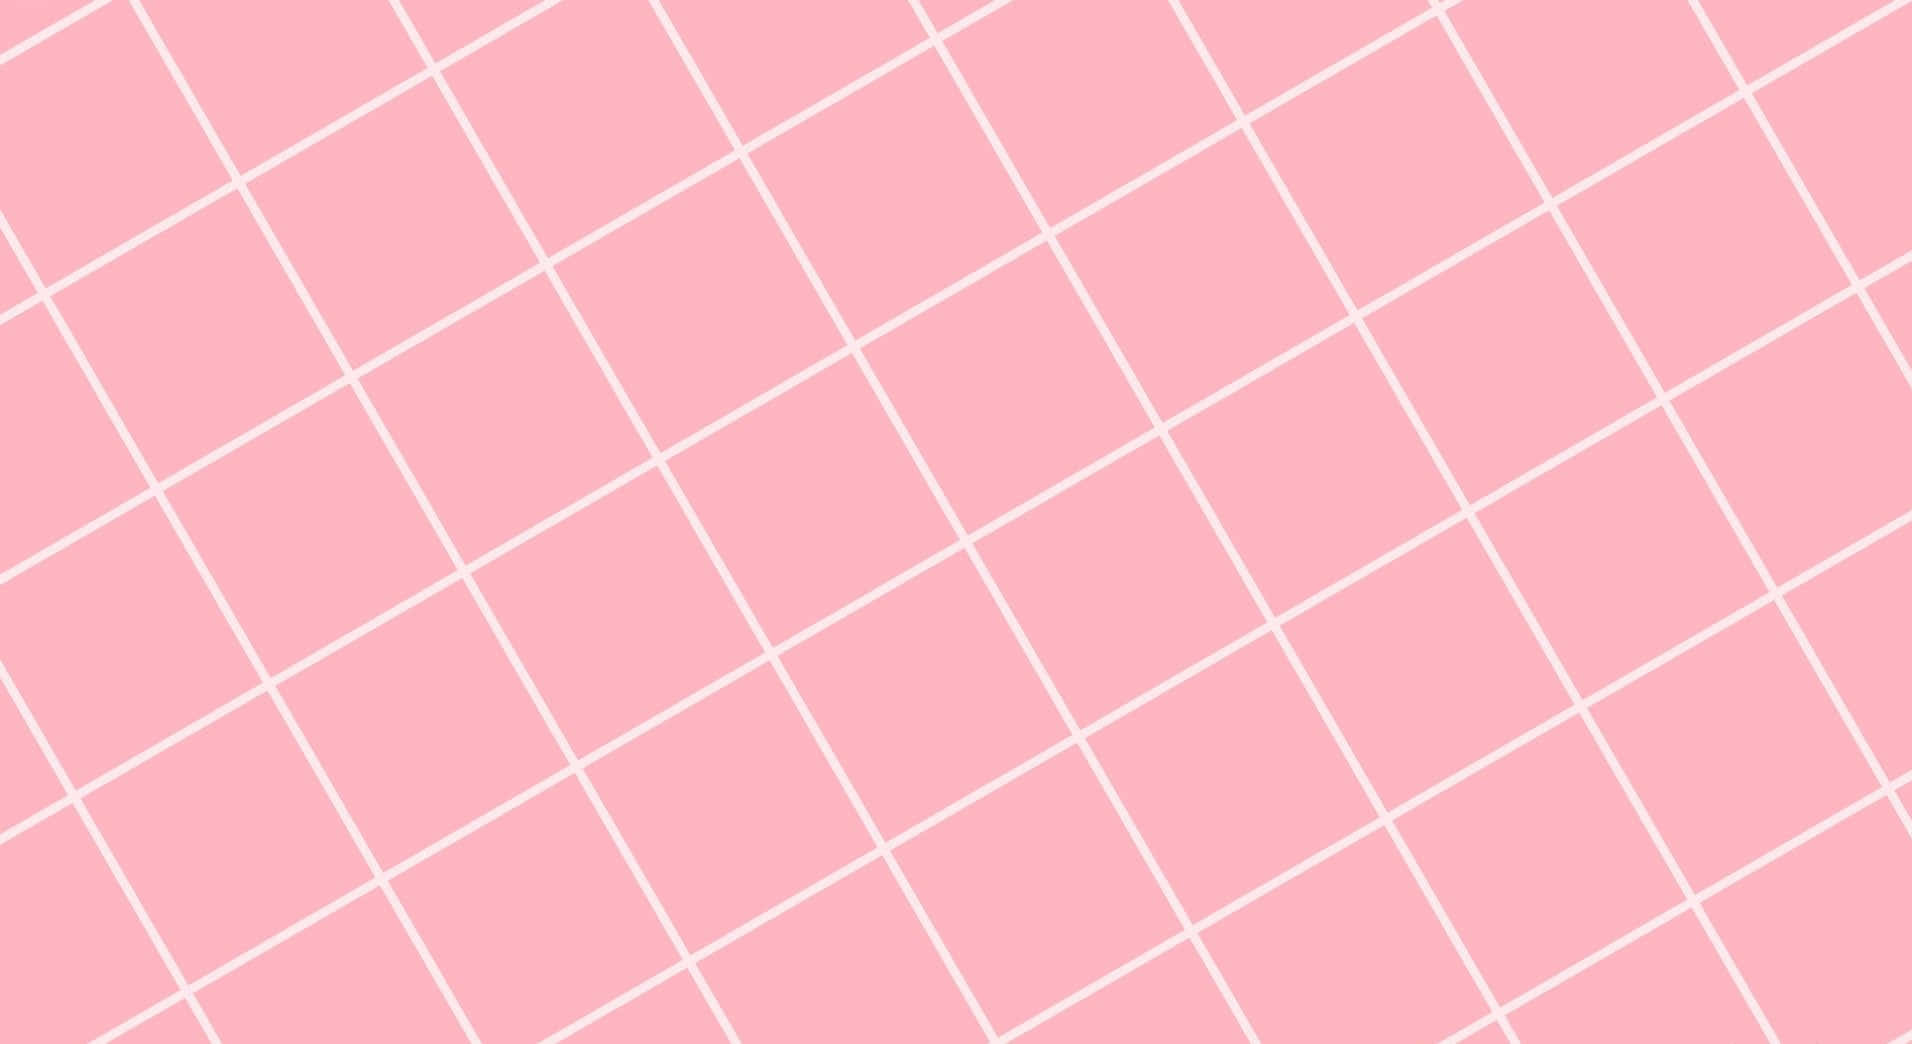 Unpatrón De Azulejos Rosados Y Blancos Fondo de pantalla